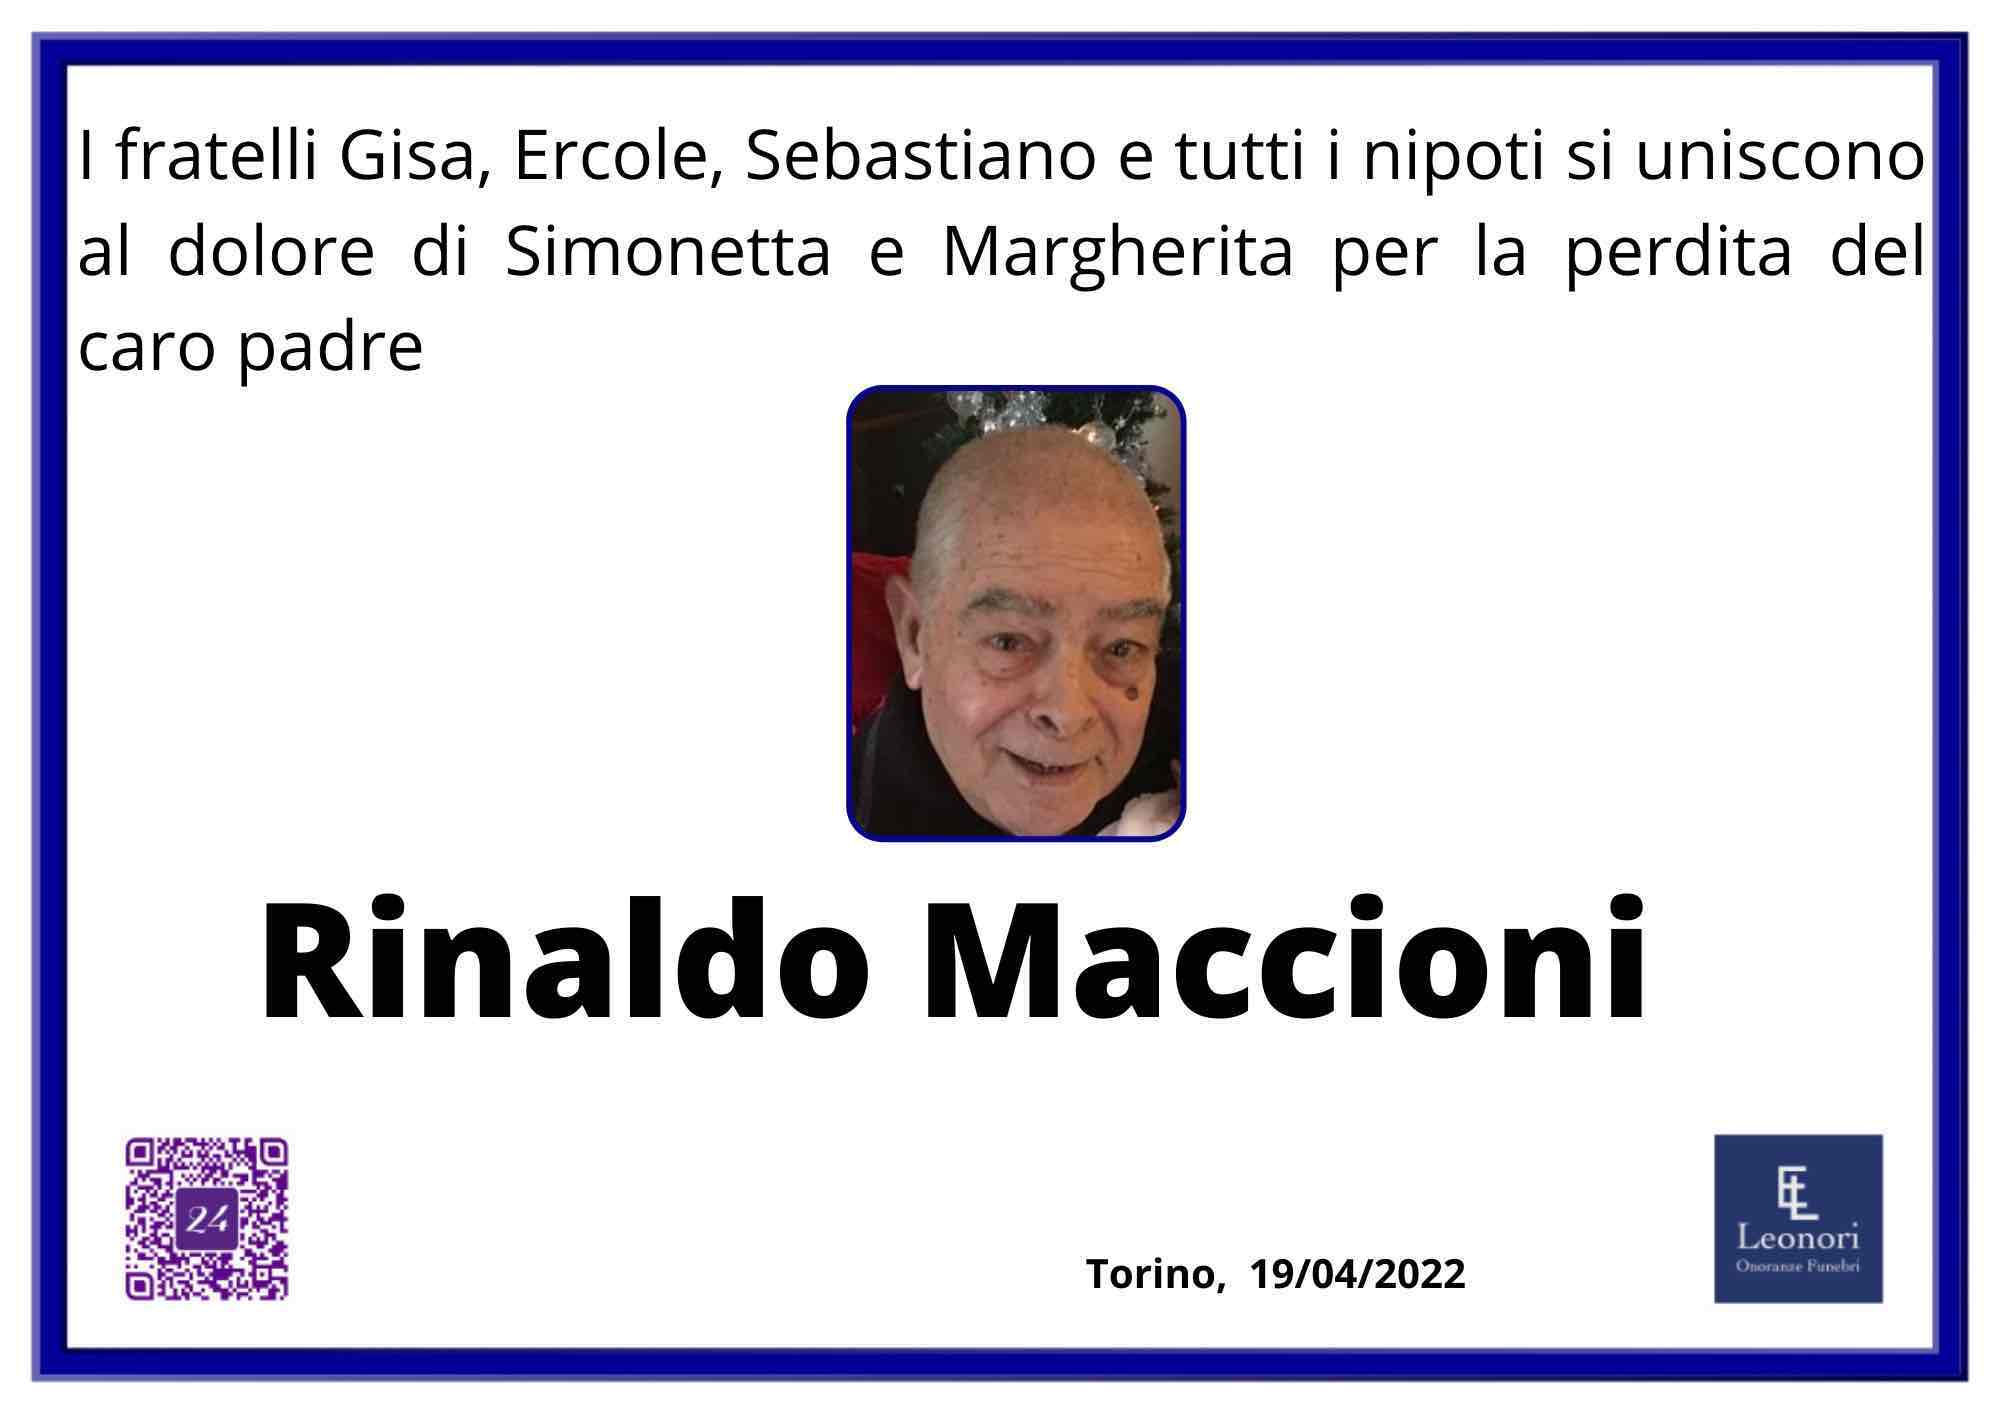 Rinaldo Maccioni